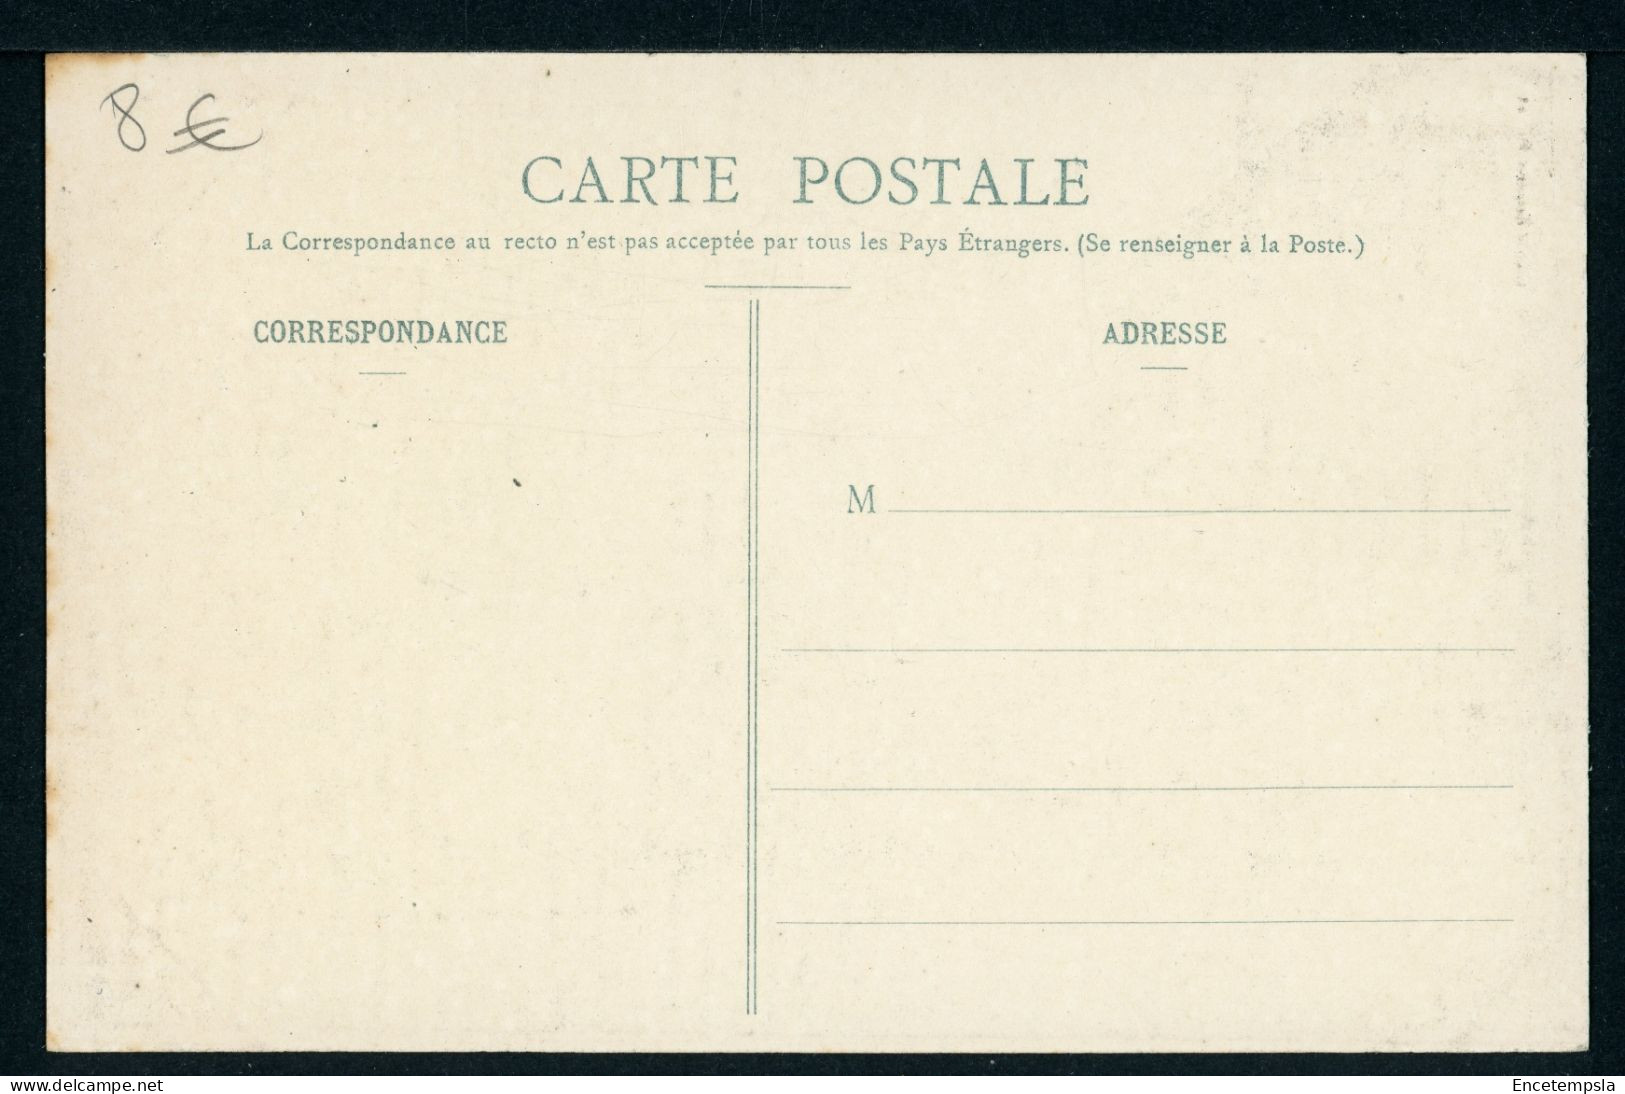 Carte Postale - France - Trainel - L'Eglise (CP24752) - Nogent-sur-Seine